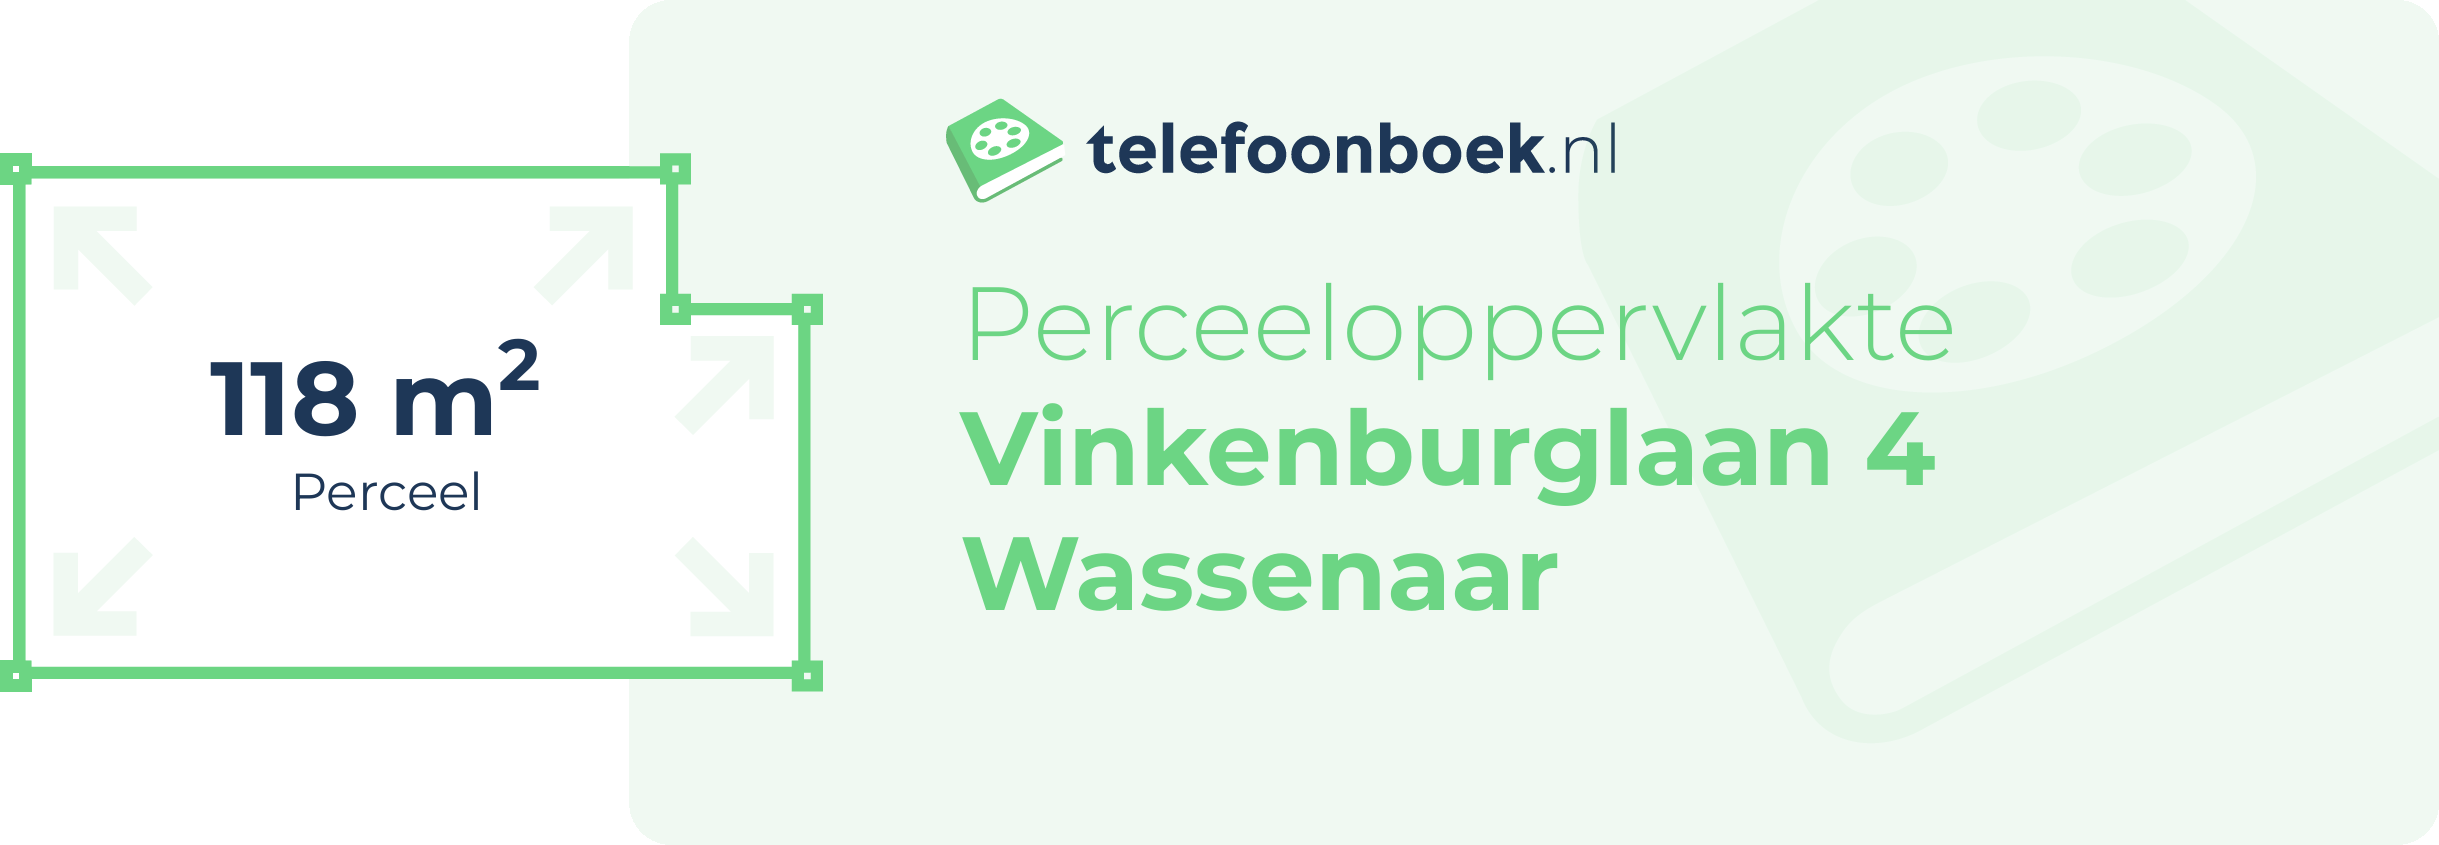 Perceeloppervlakte Vinkenburglaan 4 Wassenaar